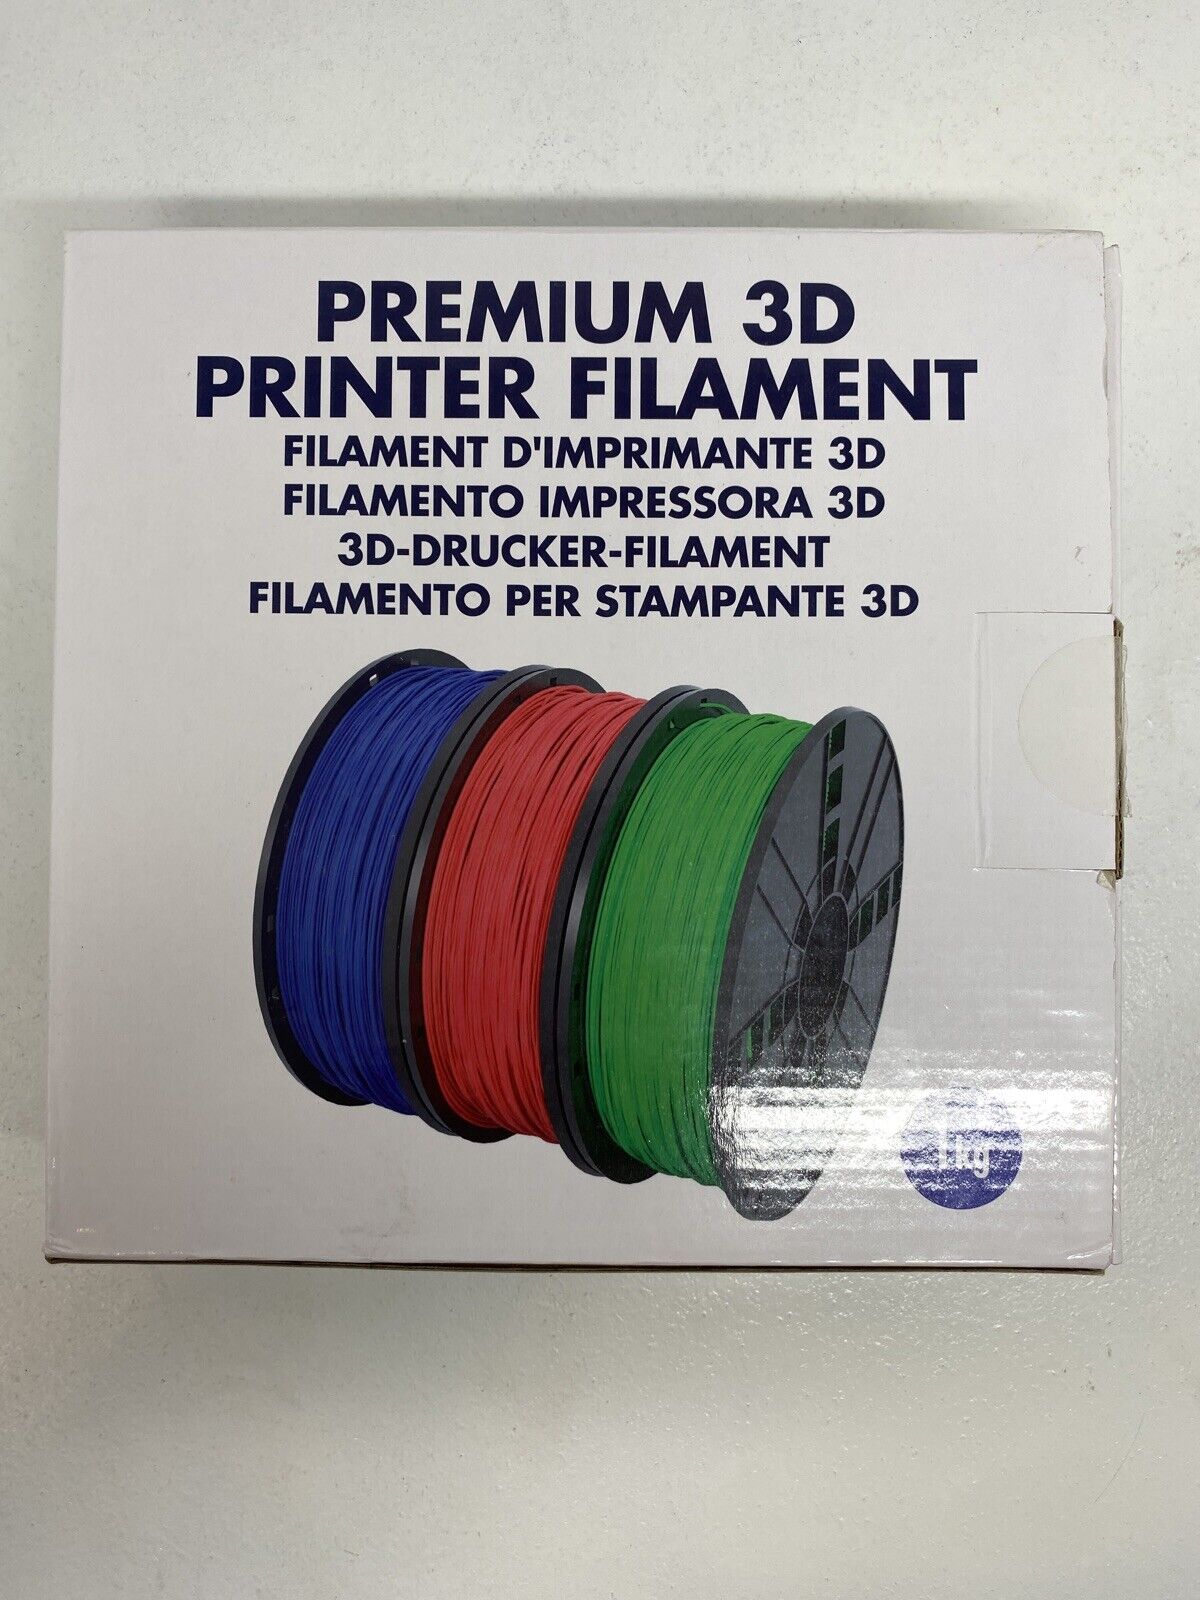 3D Printer Filament, MG Chemicals Super Glow Natural 2.85mm